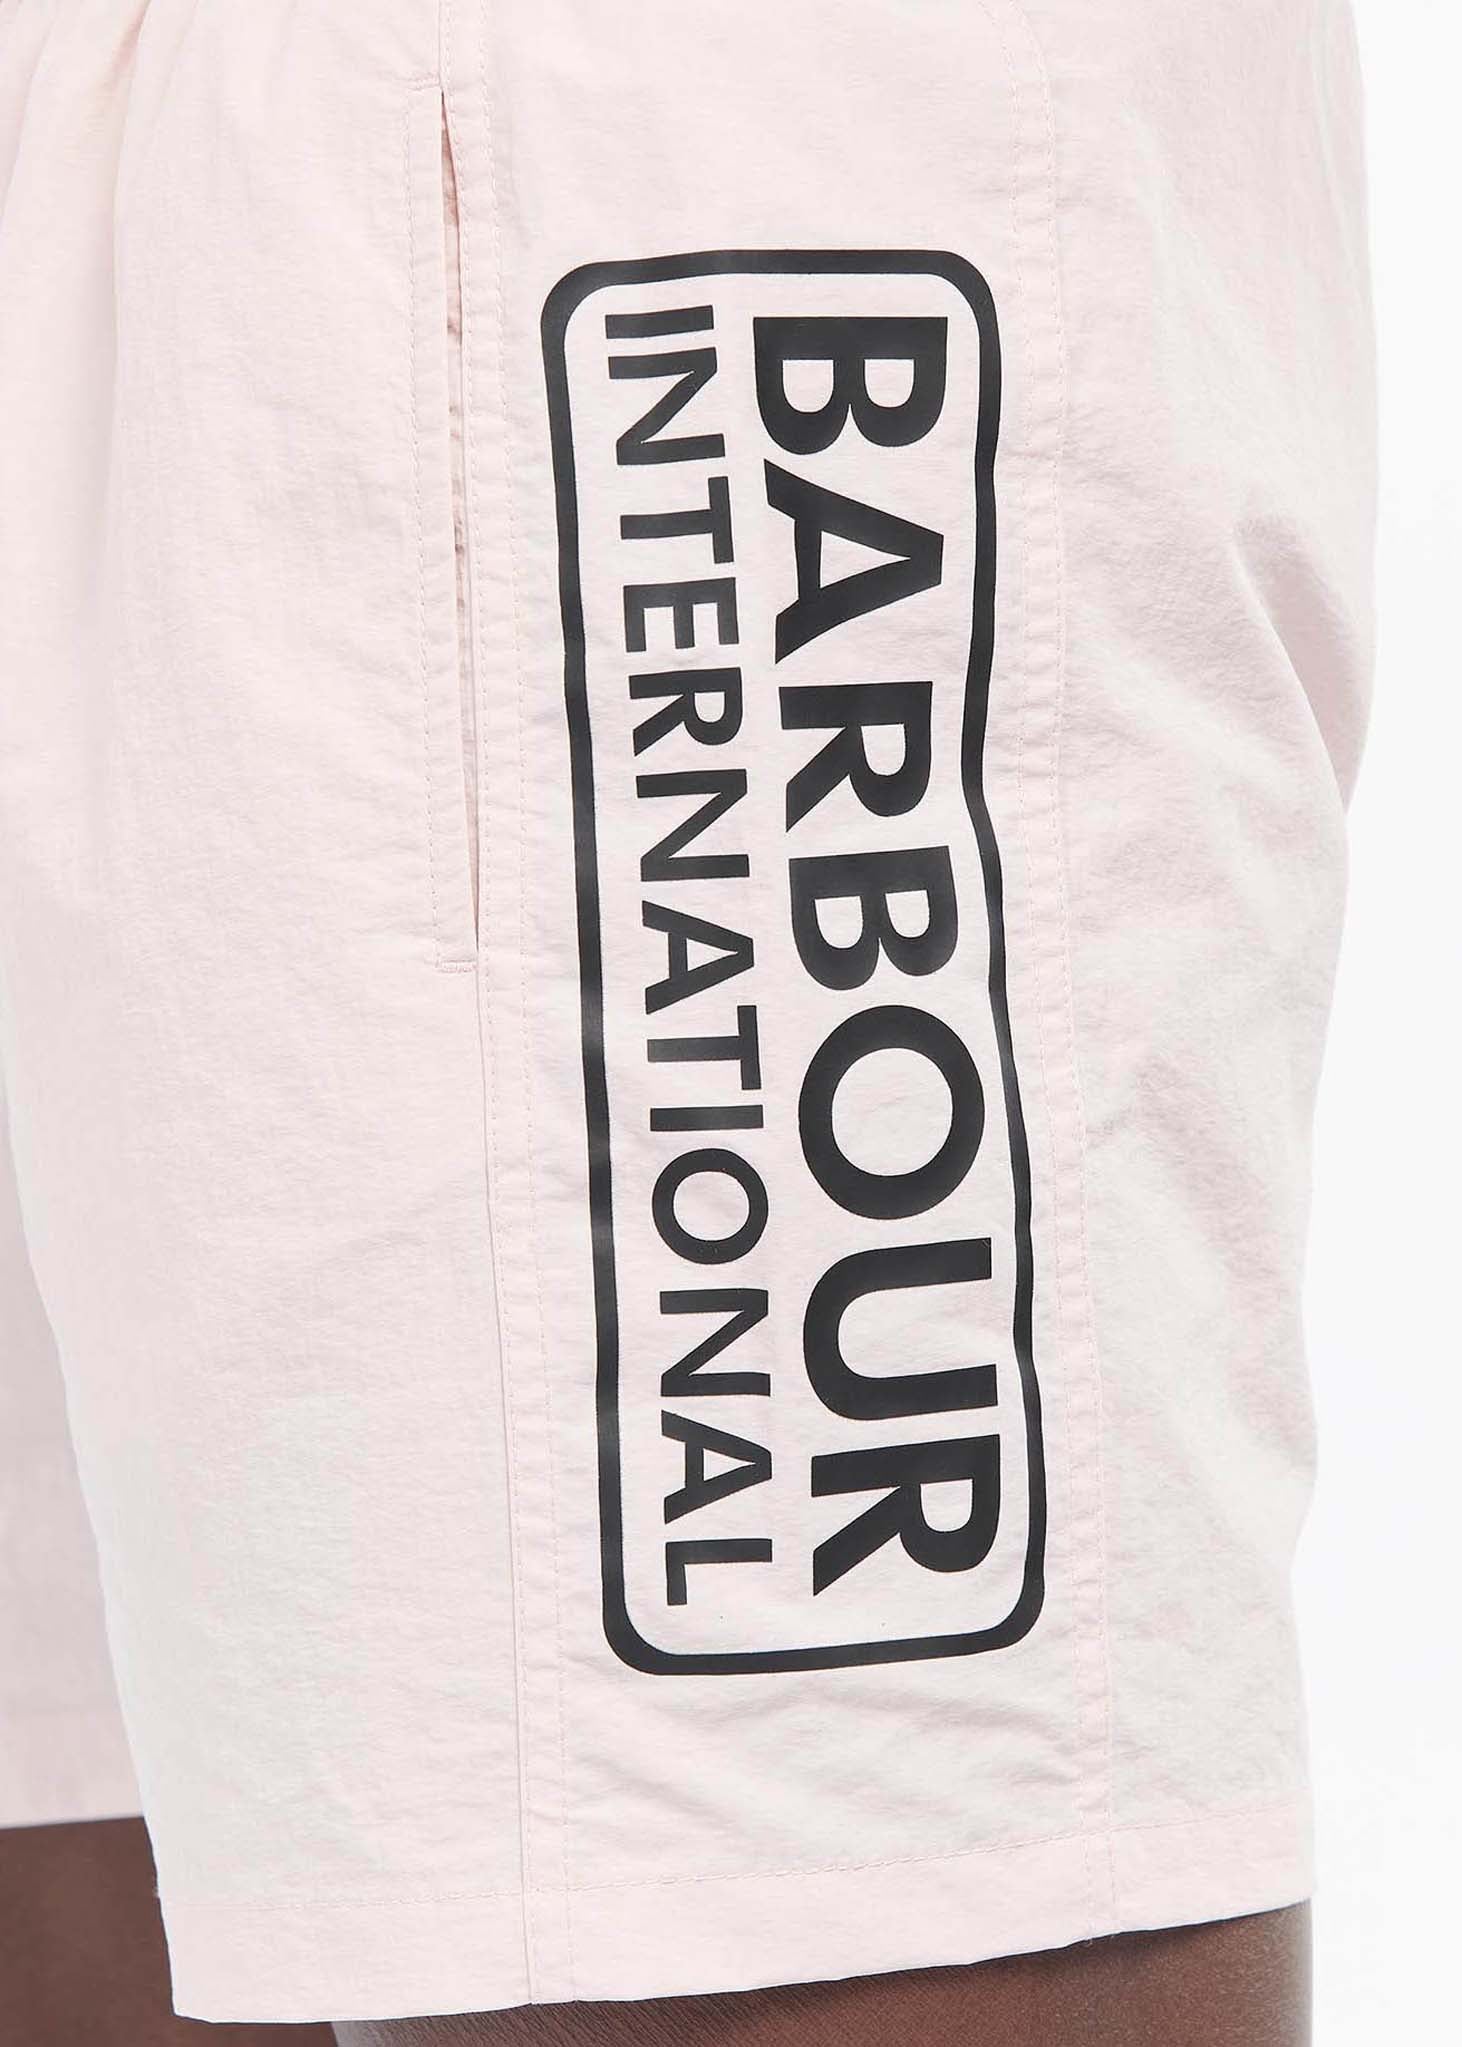 Large logo swim short- pink cinder - Barbour International